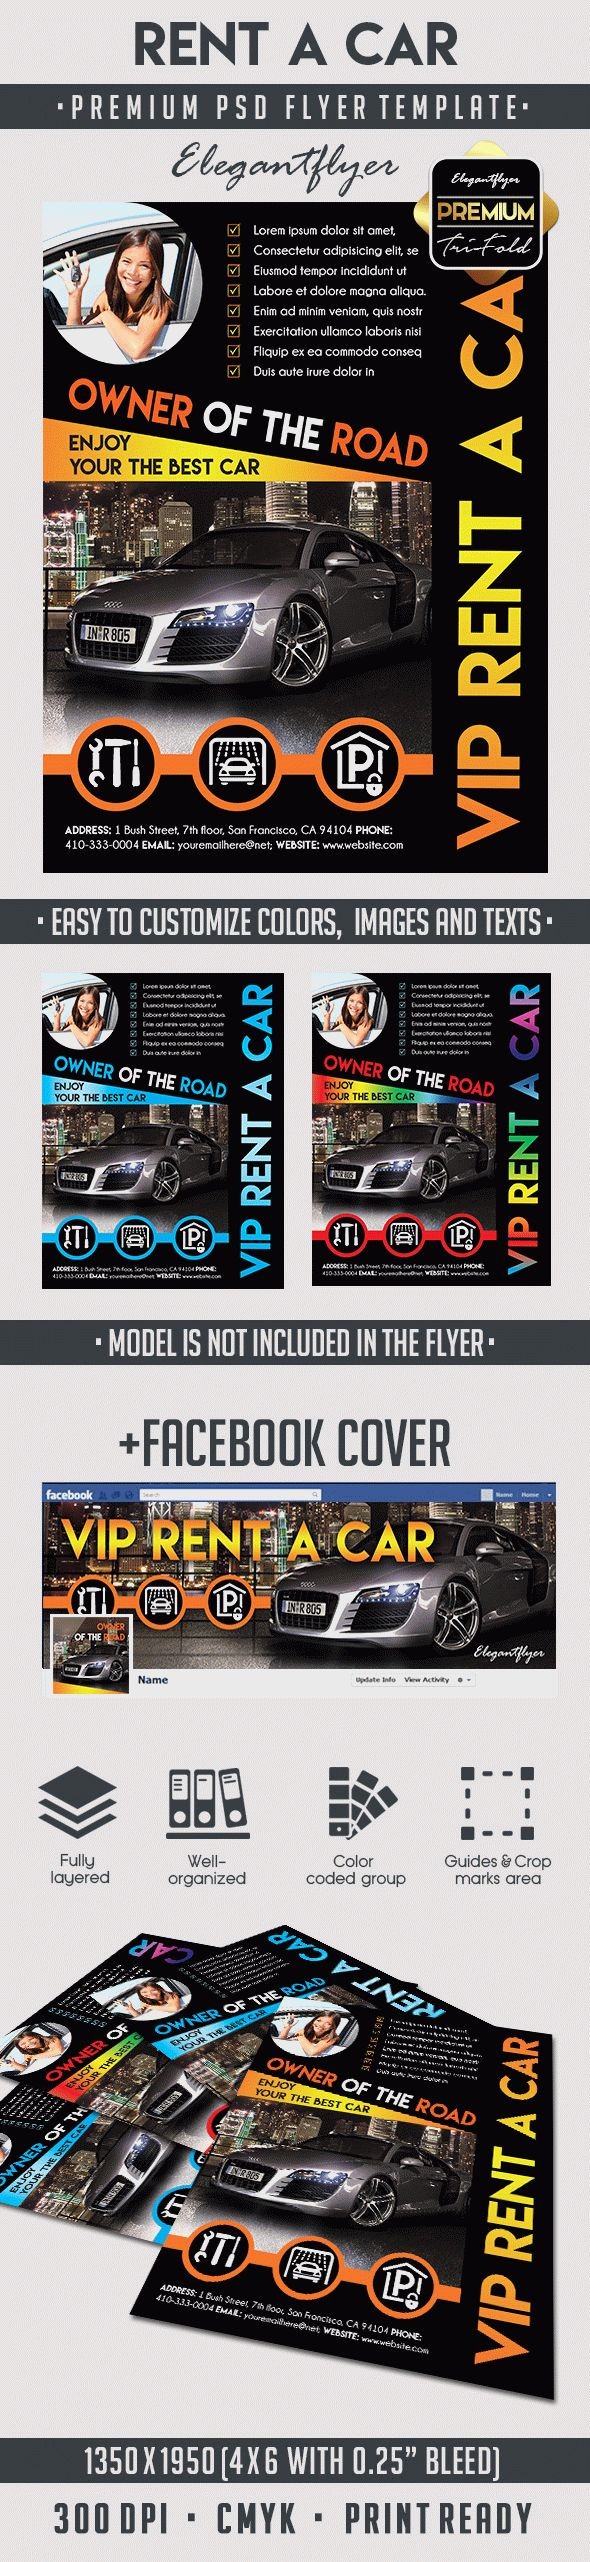 Rent A Car Flyer by ElegantFlyer